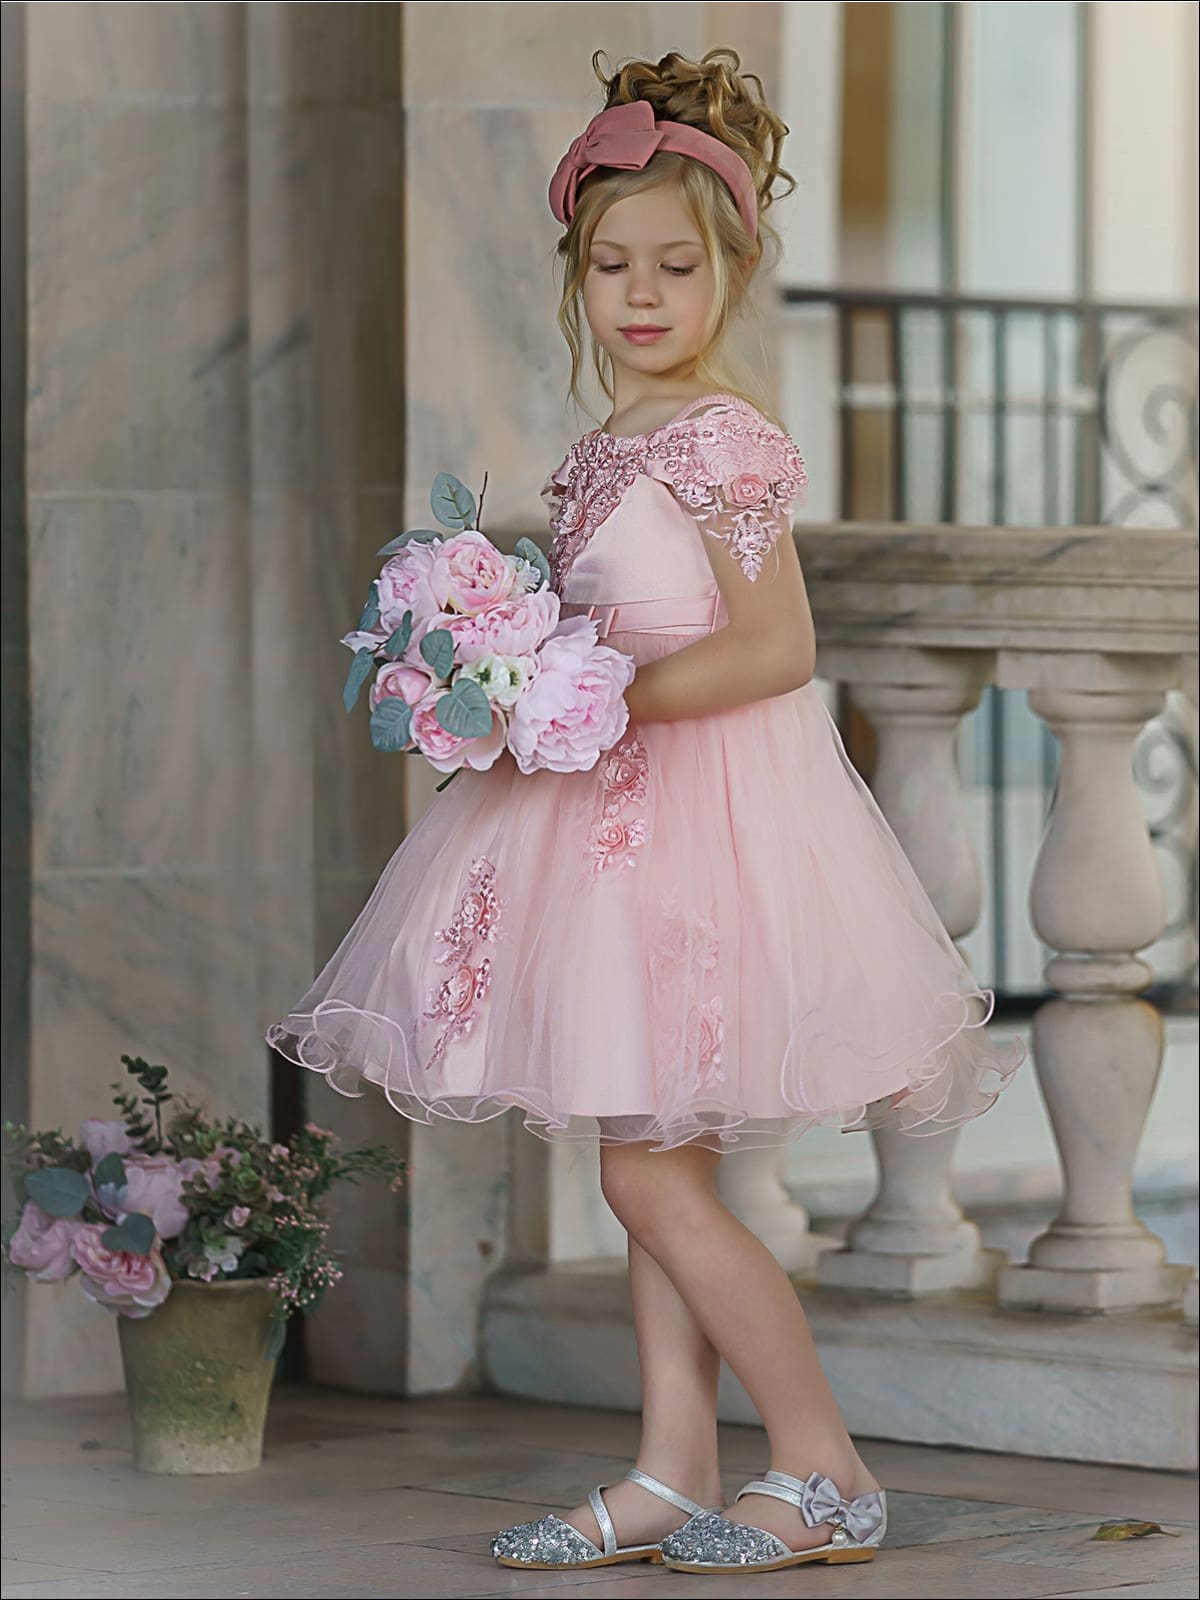 Girls Formal Dresses | Pink Floral Embellished Tulle Princess Dress ...